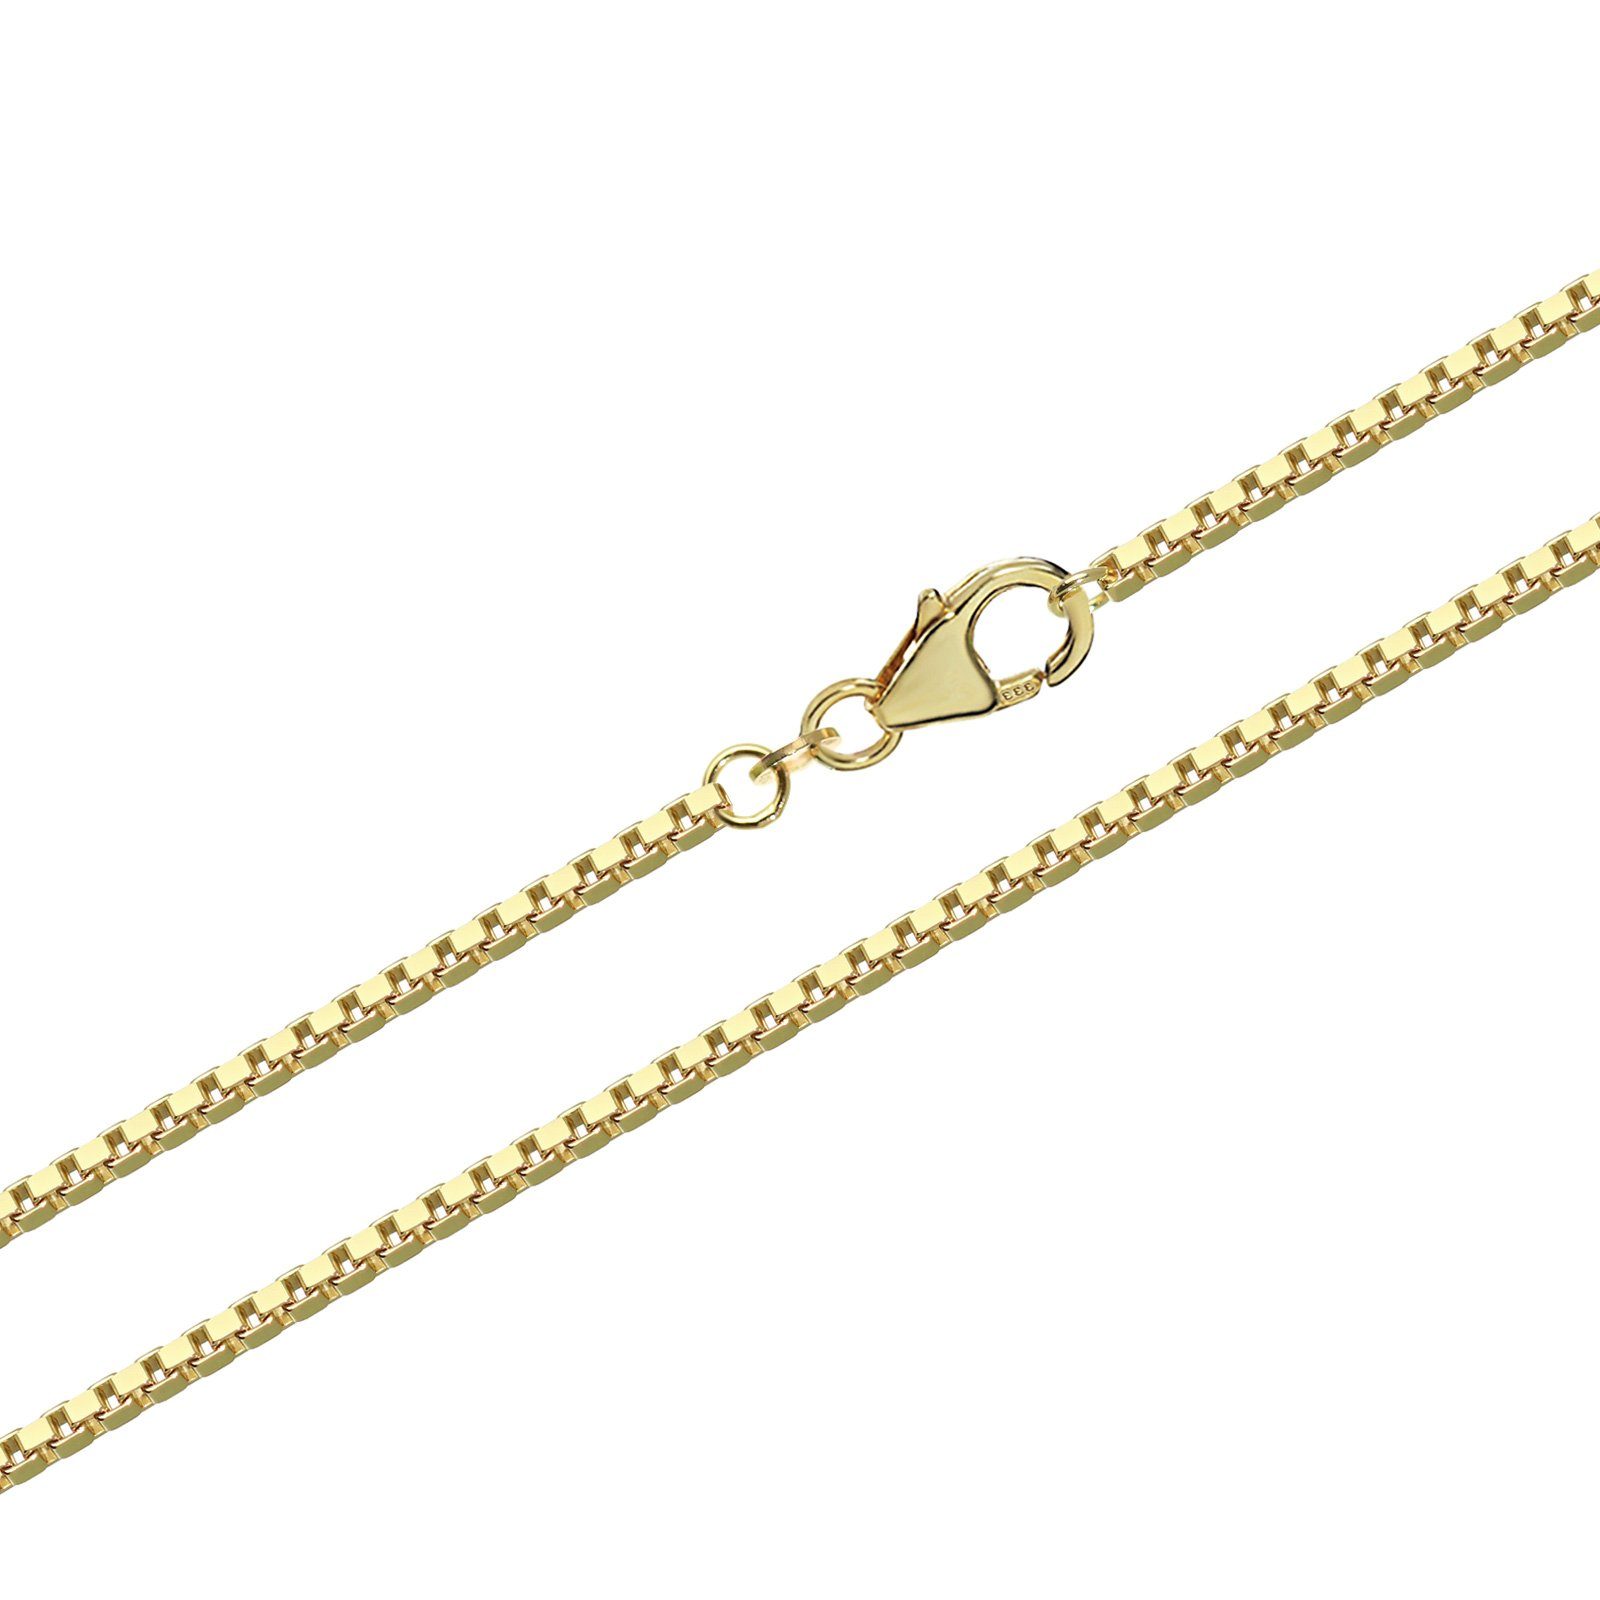 Halskette Kettenanhänger Gelbgold Venezianerk, Karat Echt füt Venezia Goldkette NKlaus 50cm 333 8